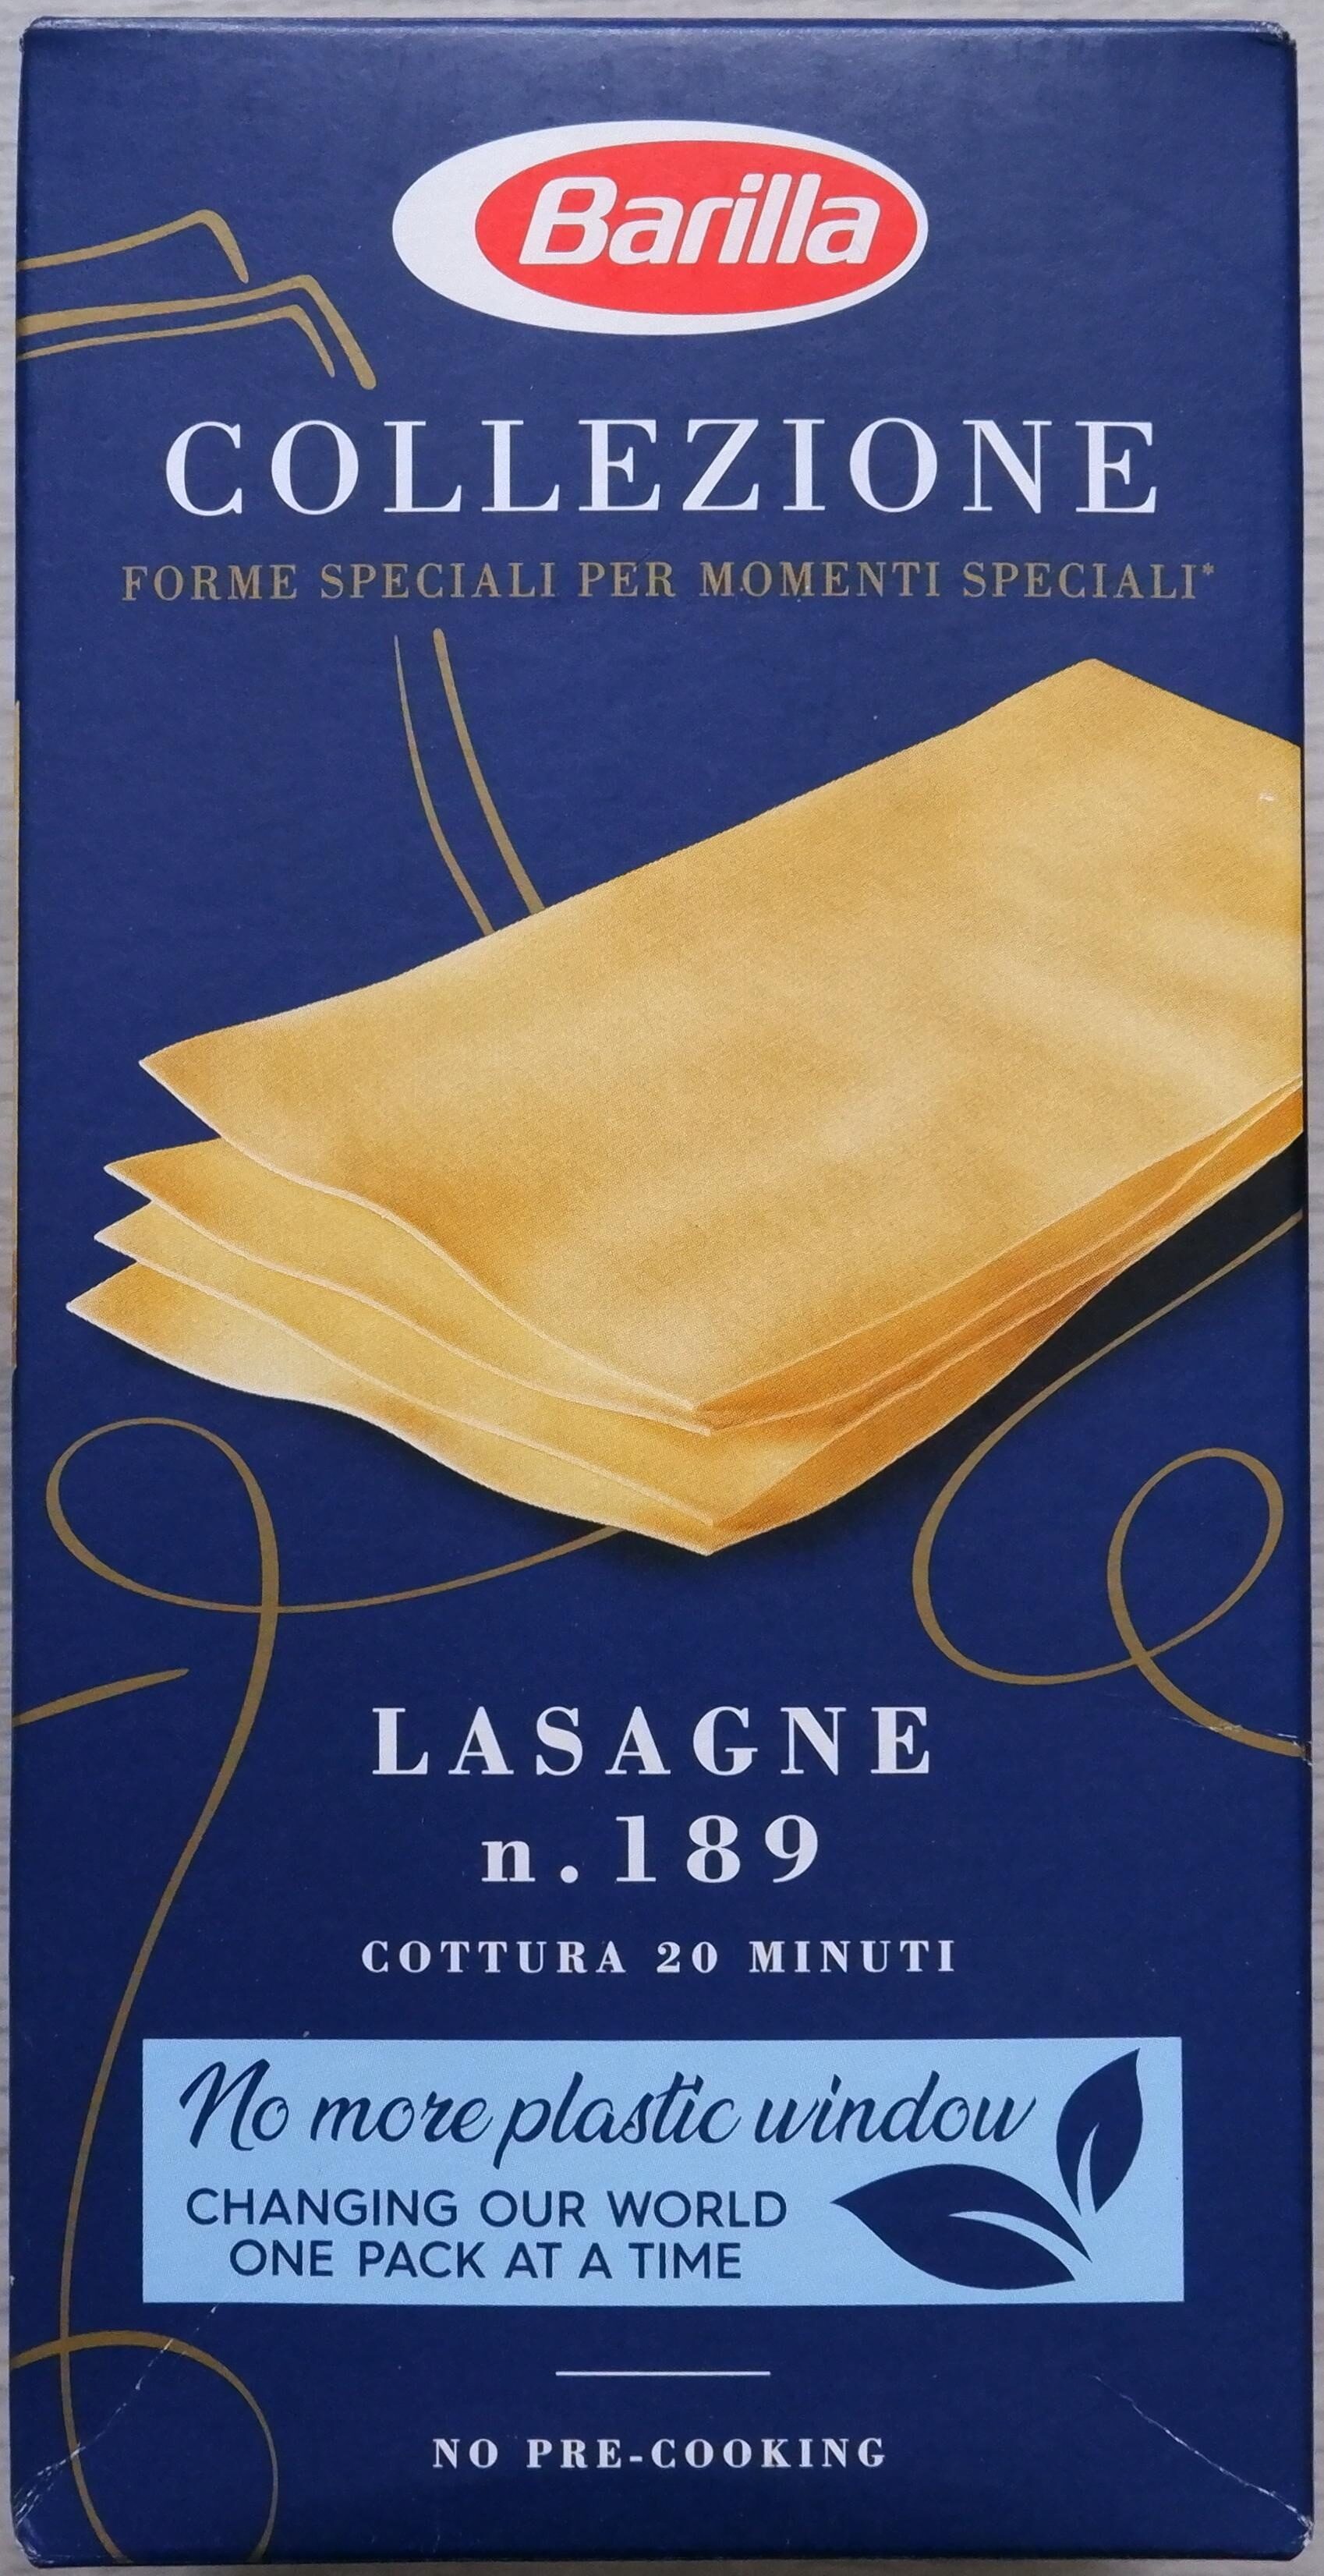 Pasta Collezione Lasagne - Product